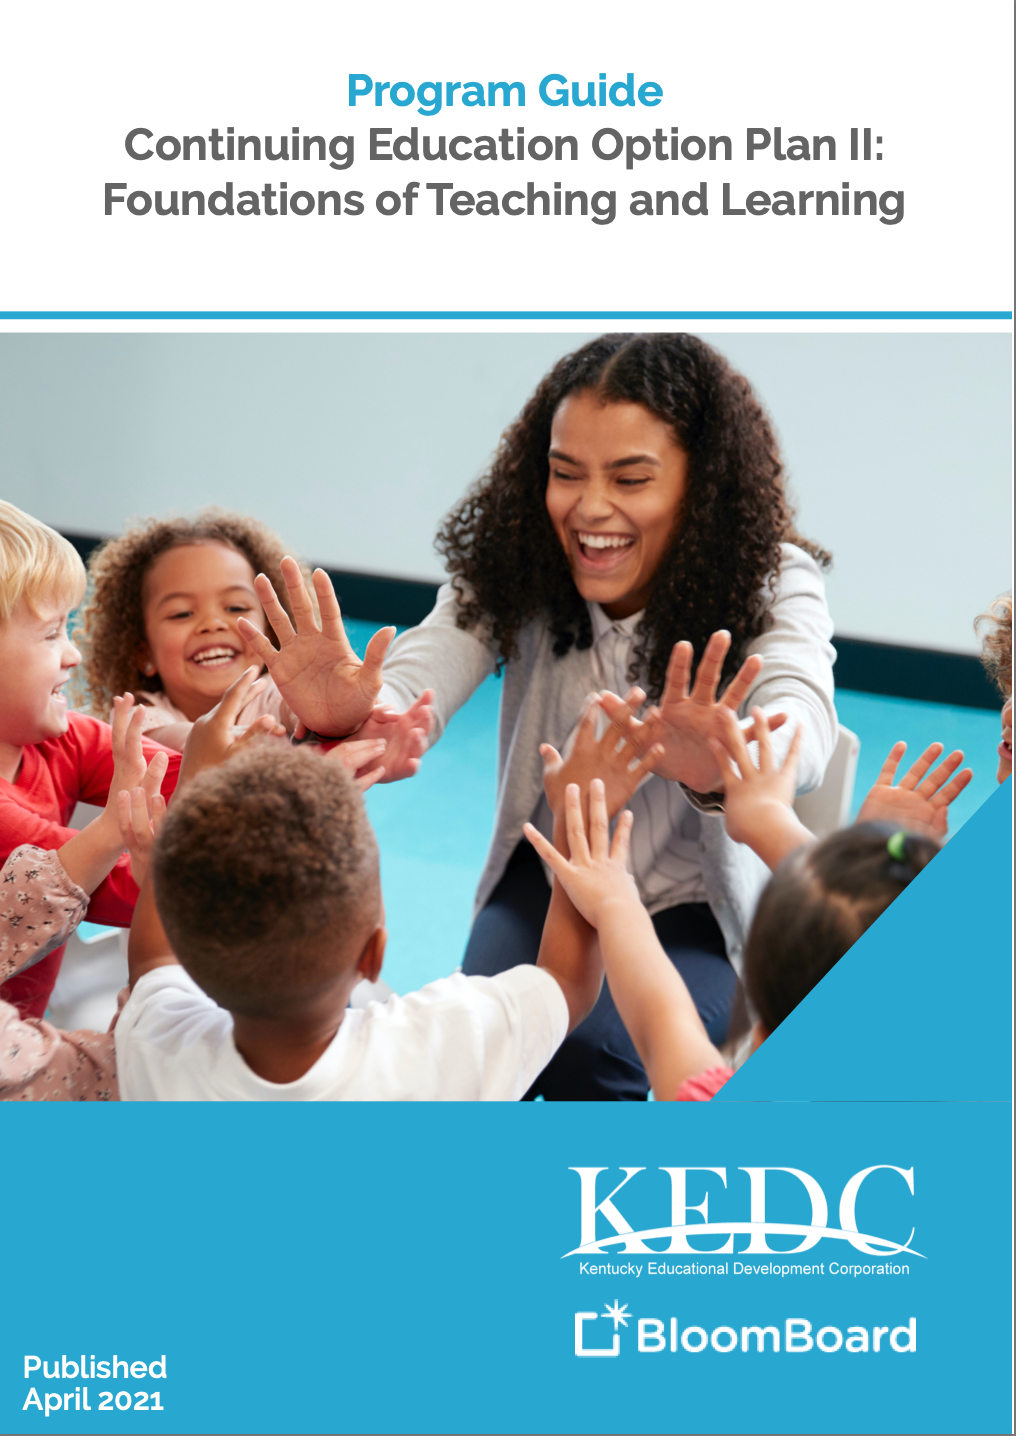 KEDC Program Guide